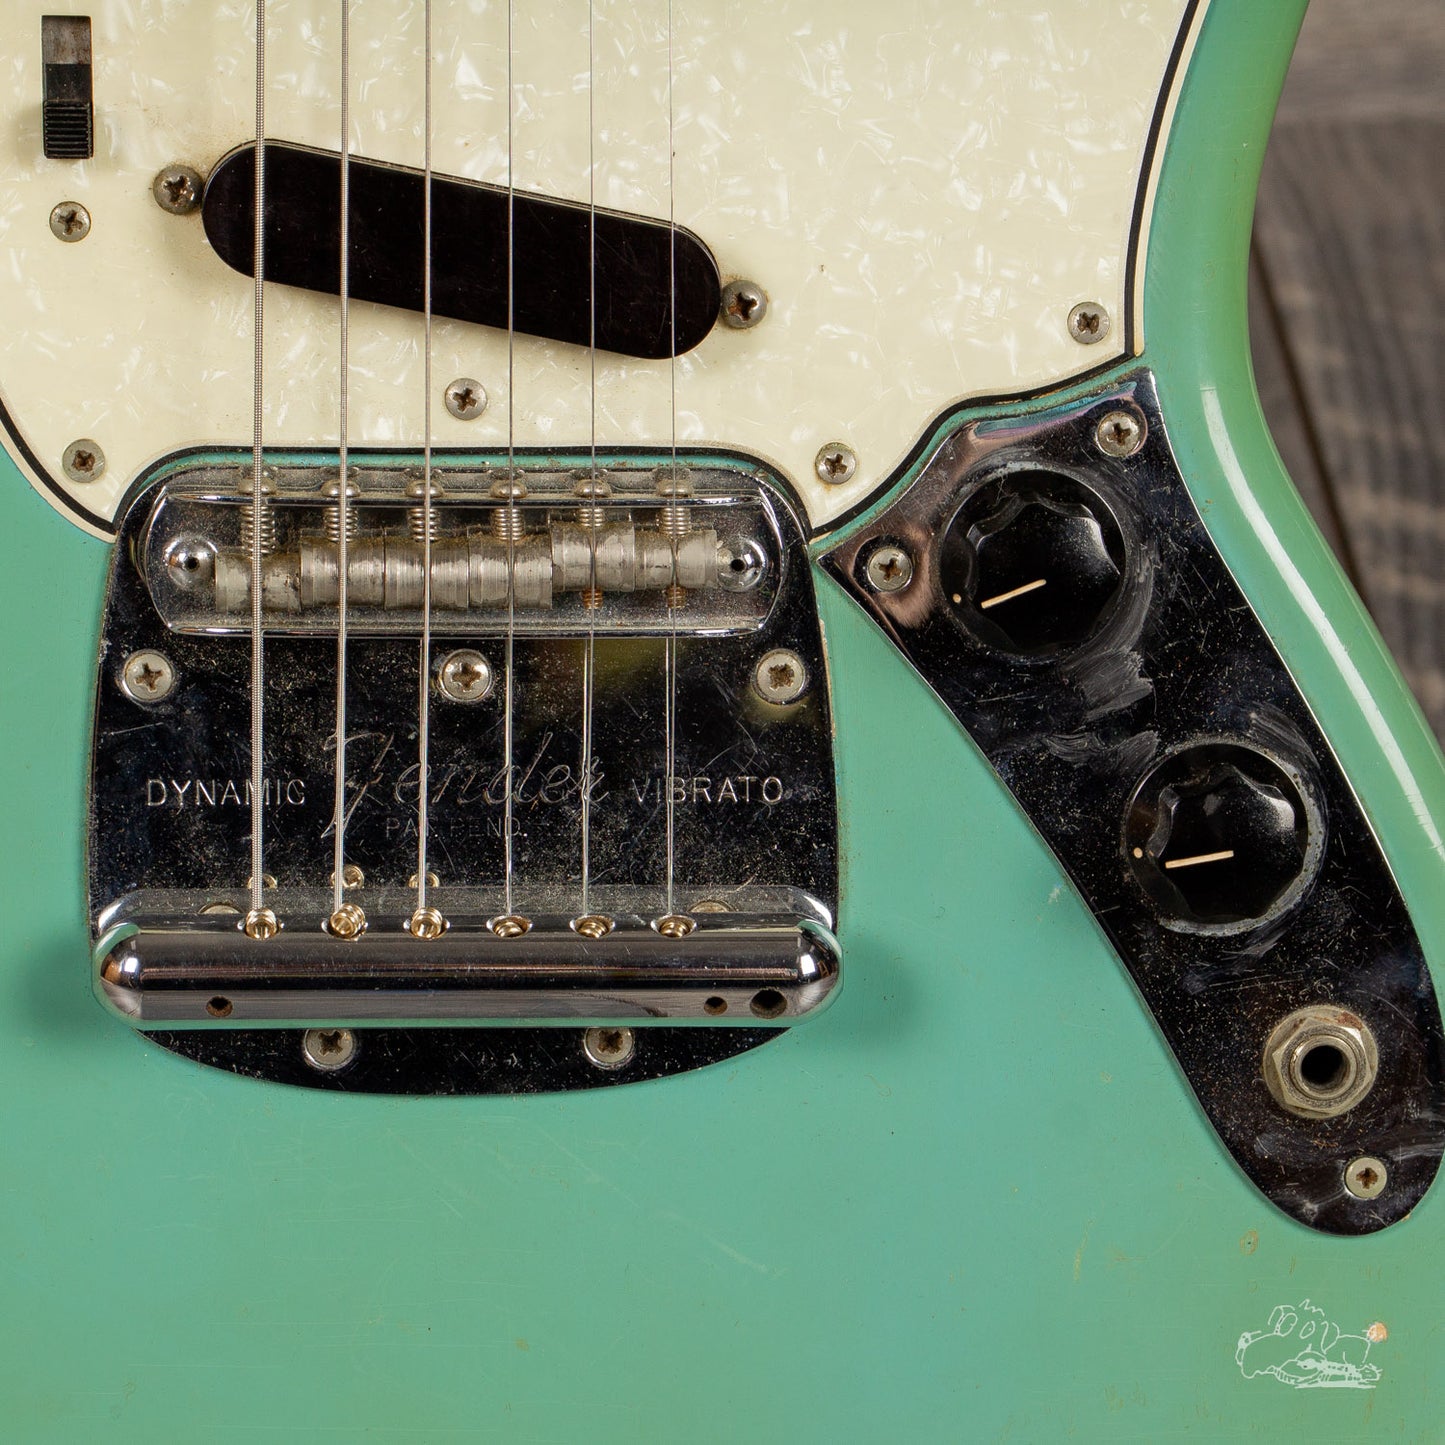 1965 Fender Mustang